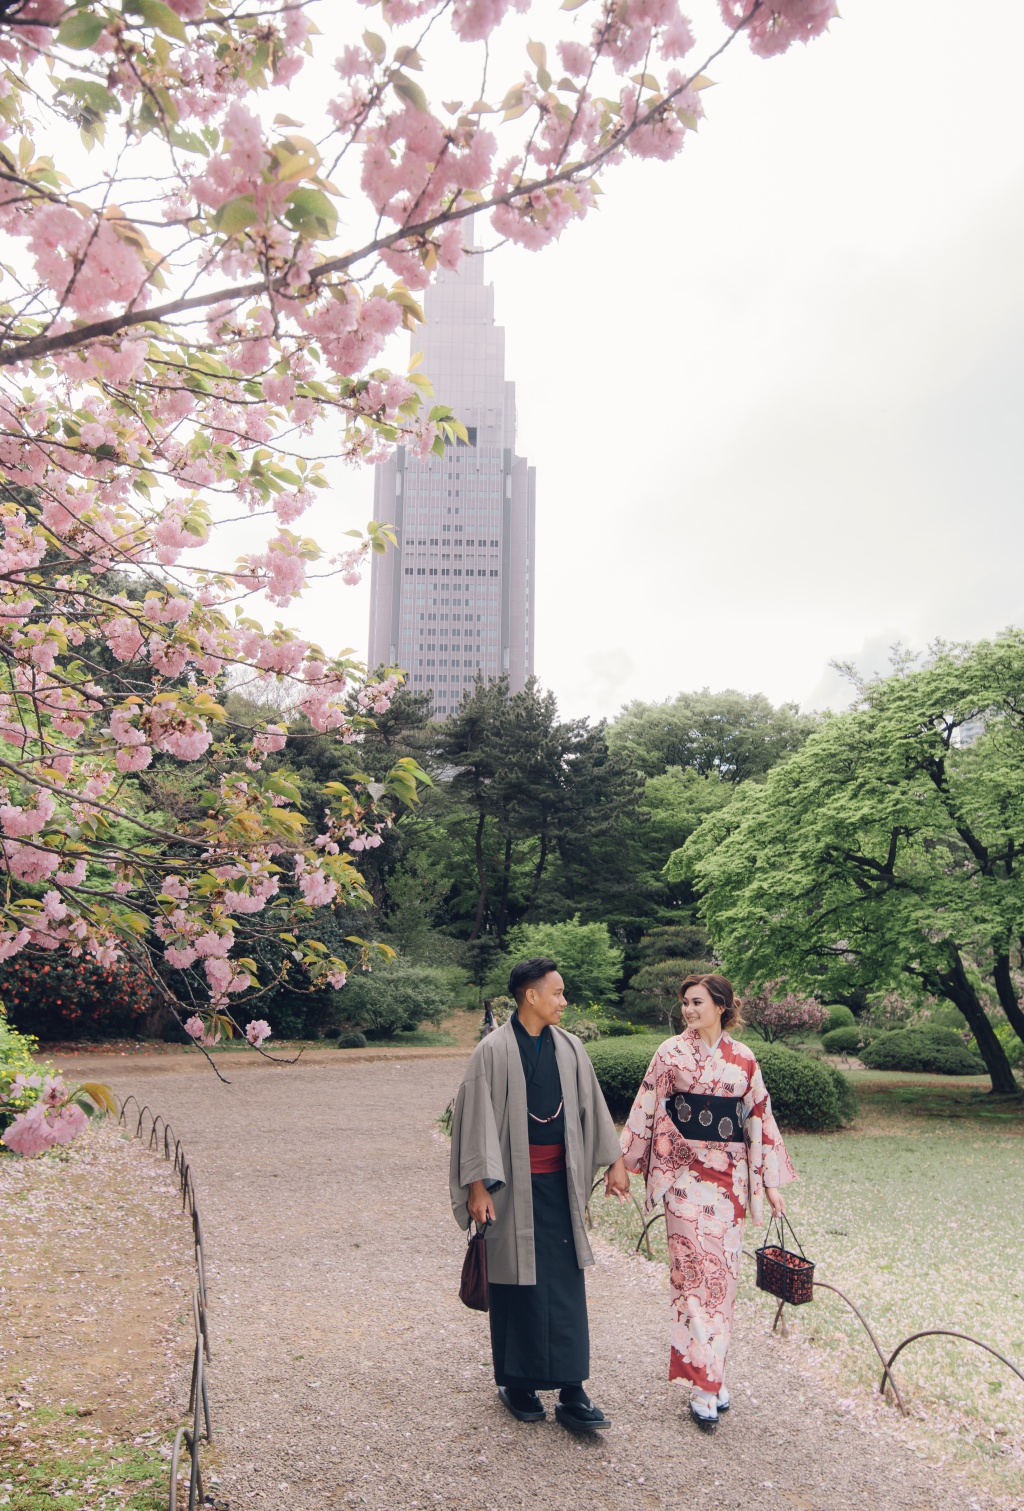 日本東京婚紗拍攝地點 - 涩谷站前十字路口 by Lenham  on OneThreeOneFour 3